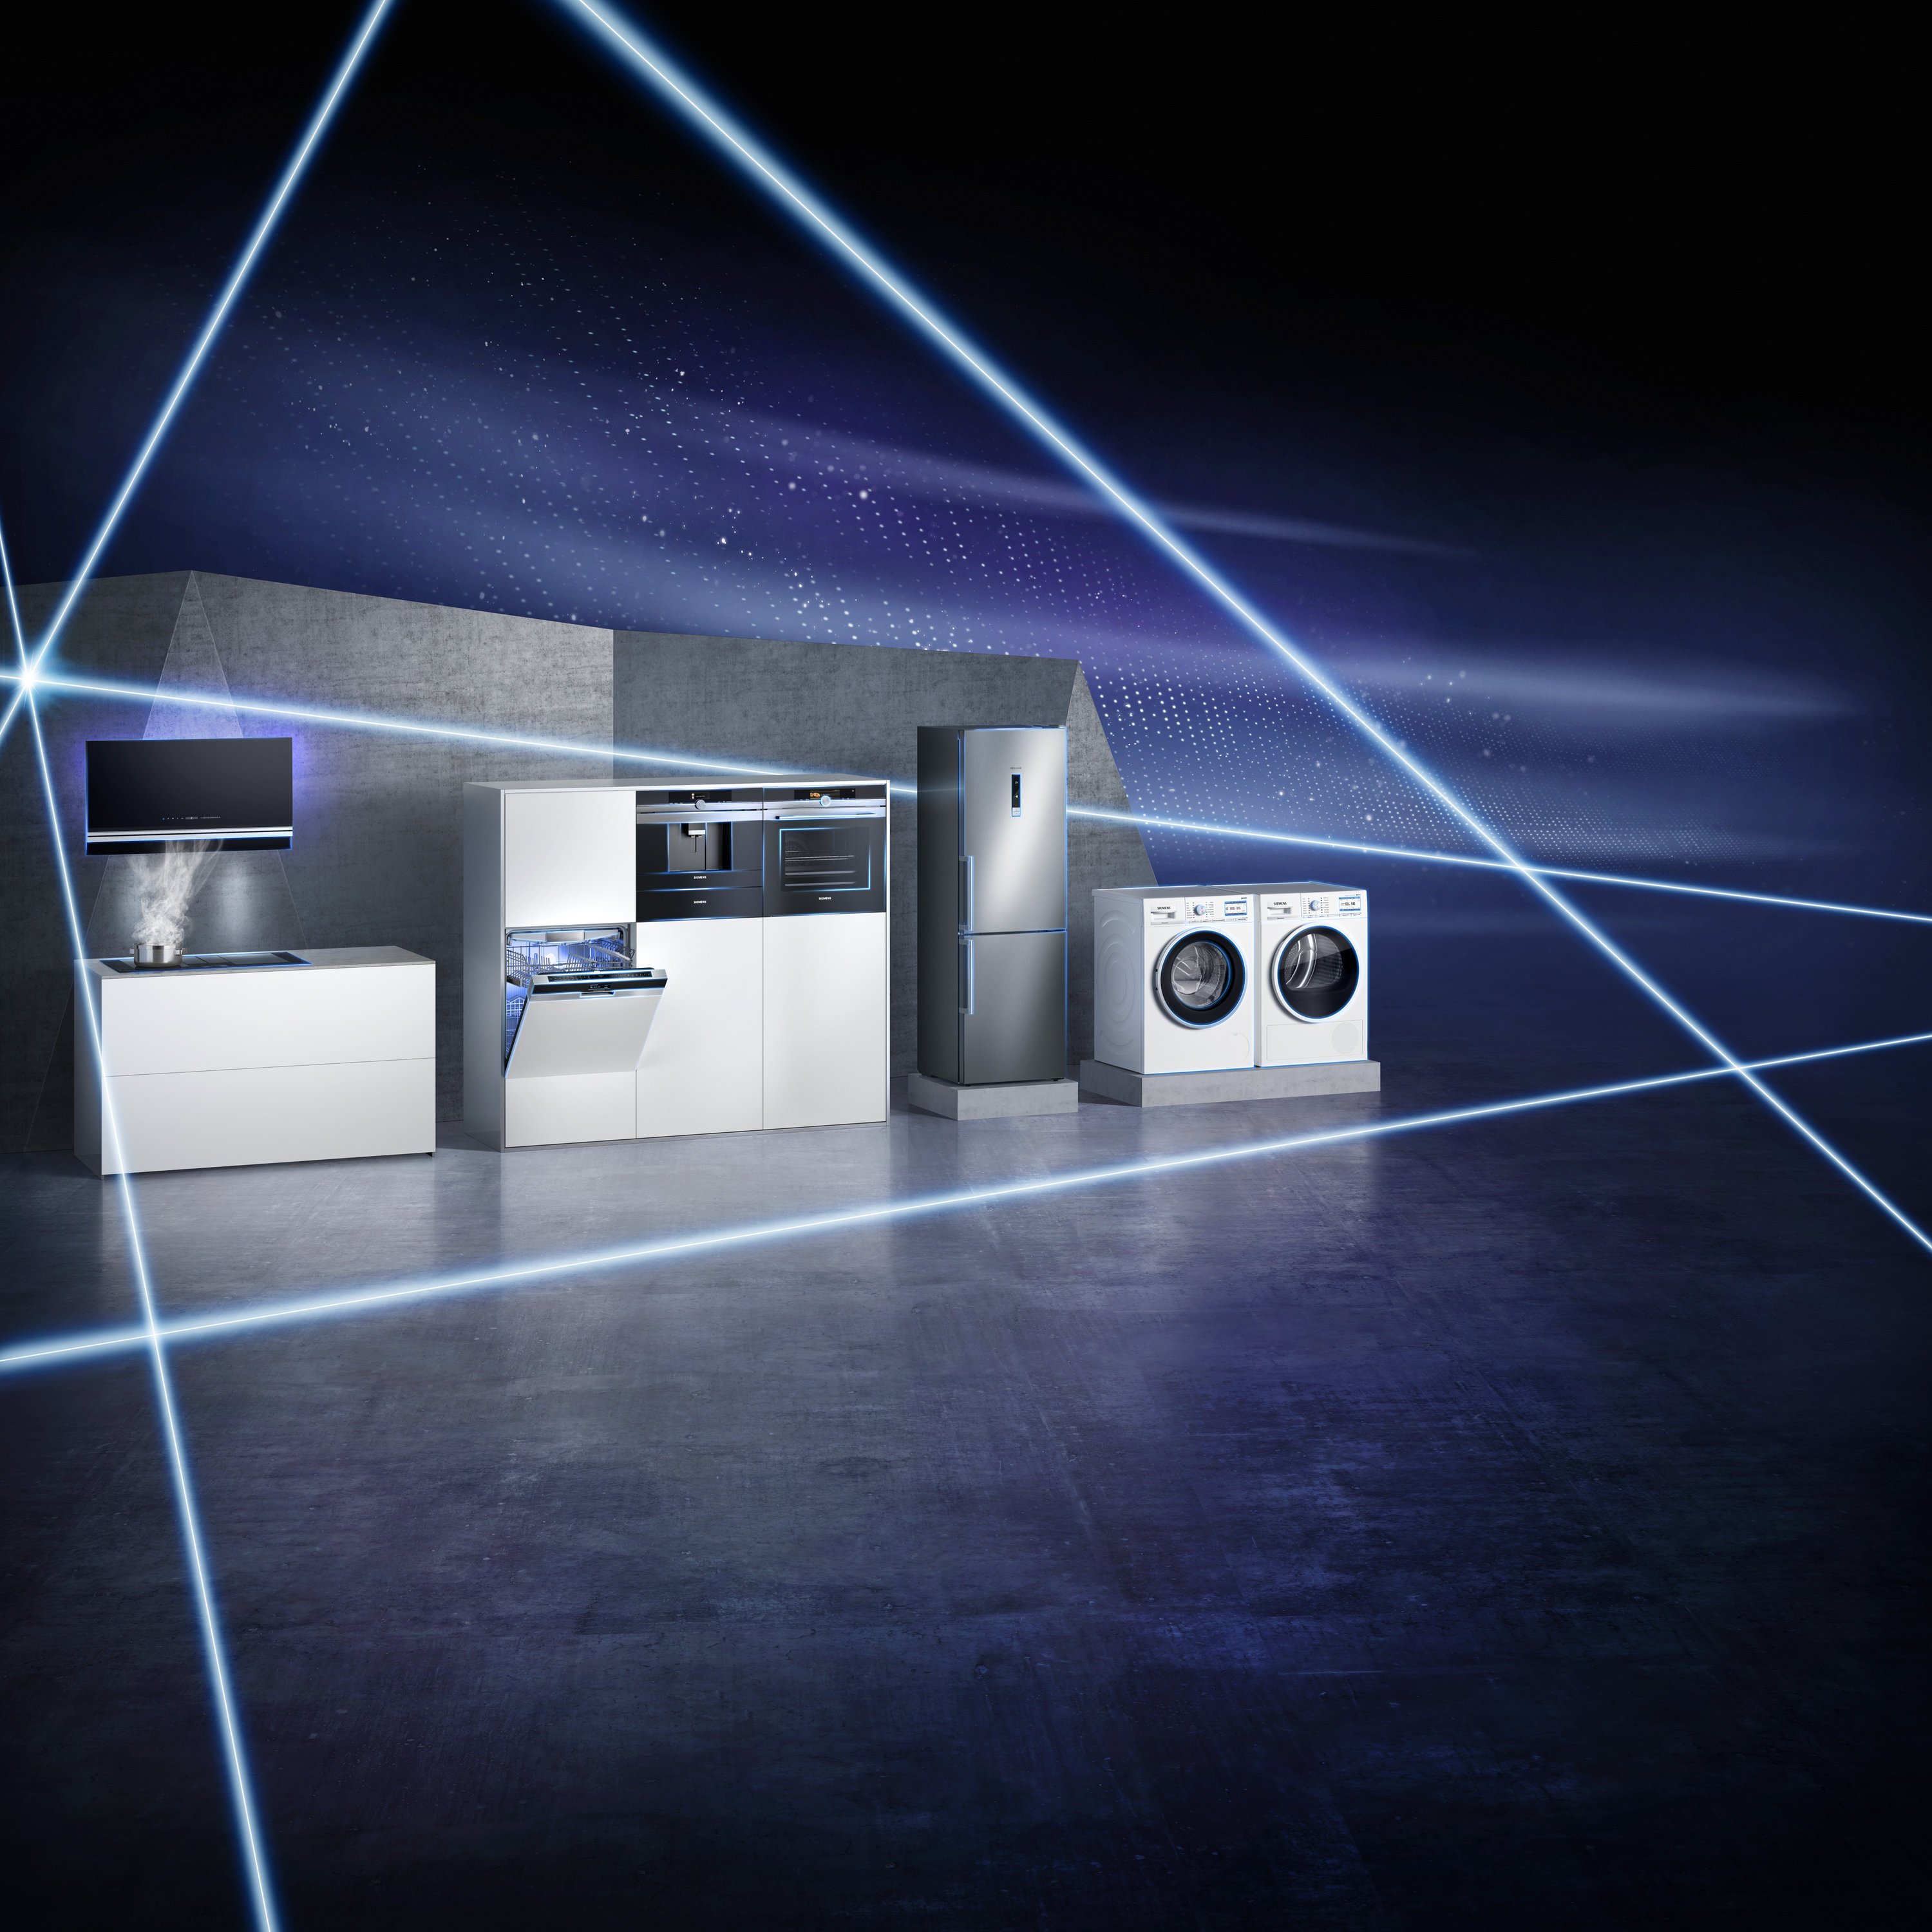 Siemens auf der IFA: Mit vernetzten Dunstabzügen und Kochfeldern schließt der Hersteller letzte Lücken im digitalen Hausgeräte-Sortiment. Waschmaschinen sollen zukünftig auf Knopfdruck Waschpulver bestellen. 